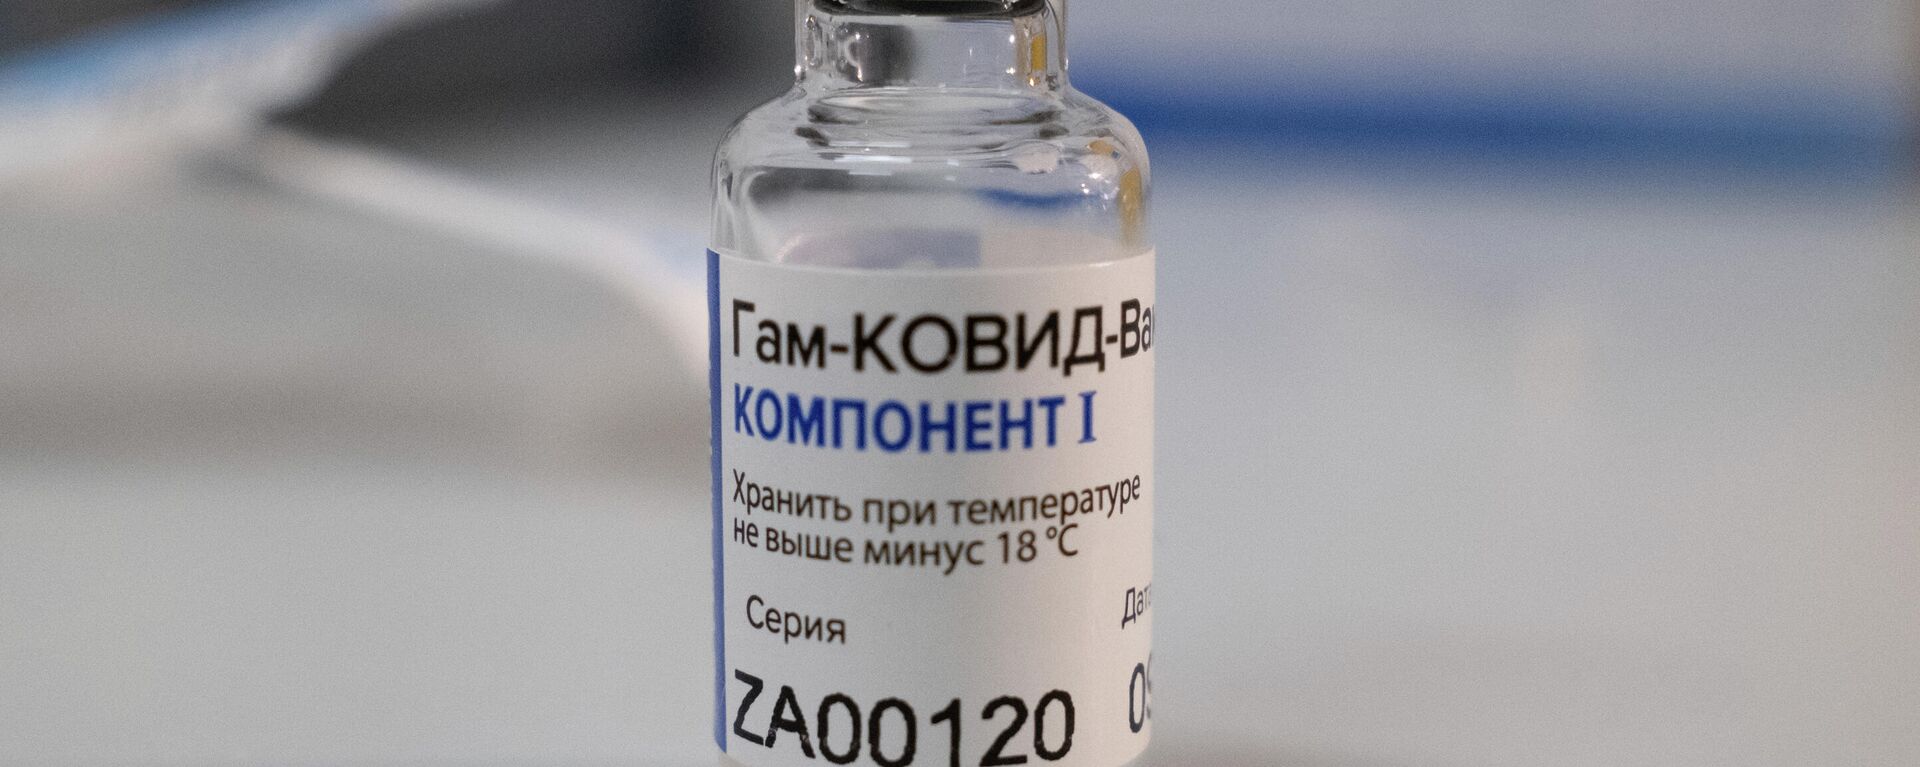 Ампула Компонент I вакцины от коронавируса Спутник V - Sputnik Узбекистан, 1920, 24.06.2021